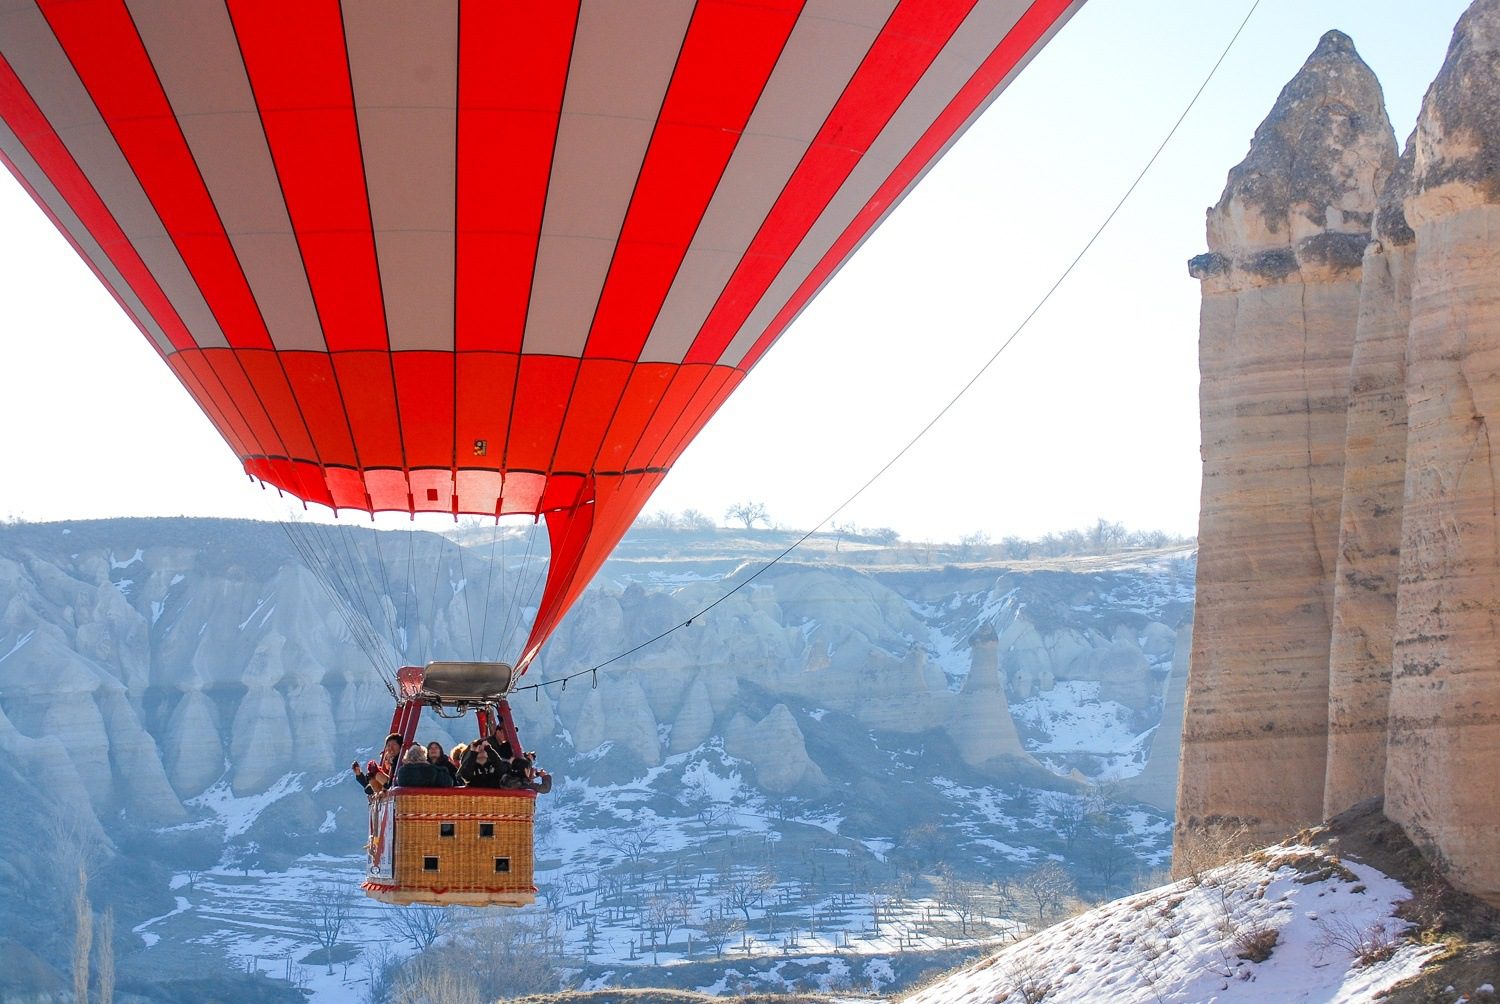 A Balloon ride over Cappadocia.